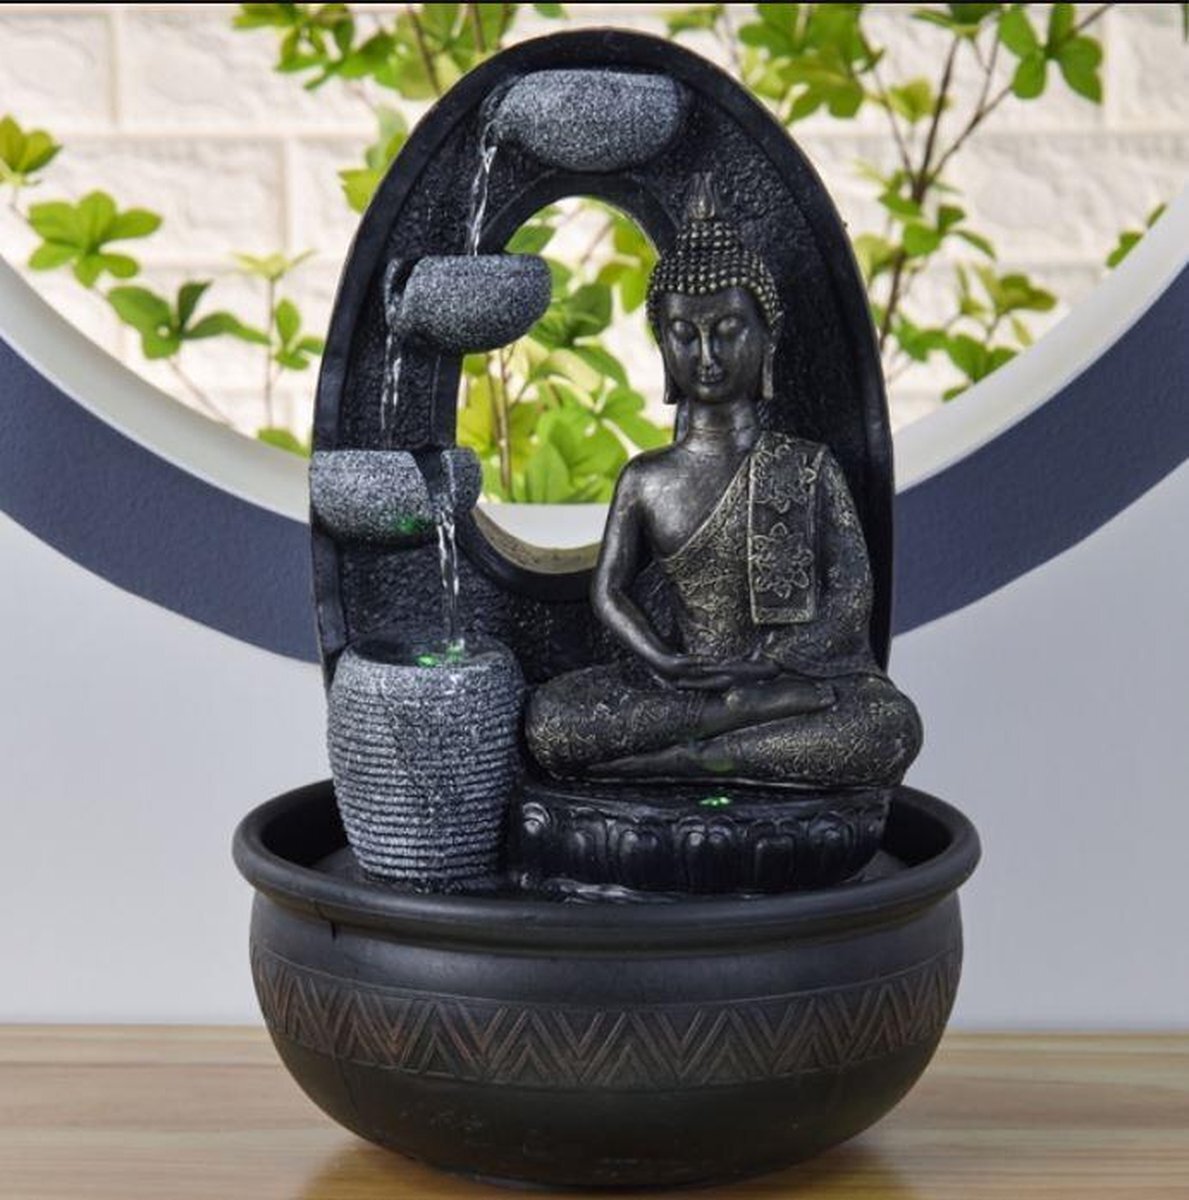 Zen Light Boeddha Harmonie Relax - fontein - interieur - fontein voor binnen - relaxeer - zen - waterornament - cadeau - geschenk - relatiegeschenk - origineel - lente - zomer - lentecollectie - zomercollectie - afkoeling - koelte